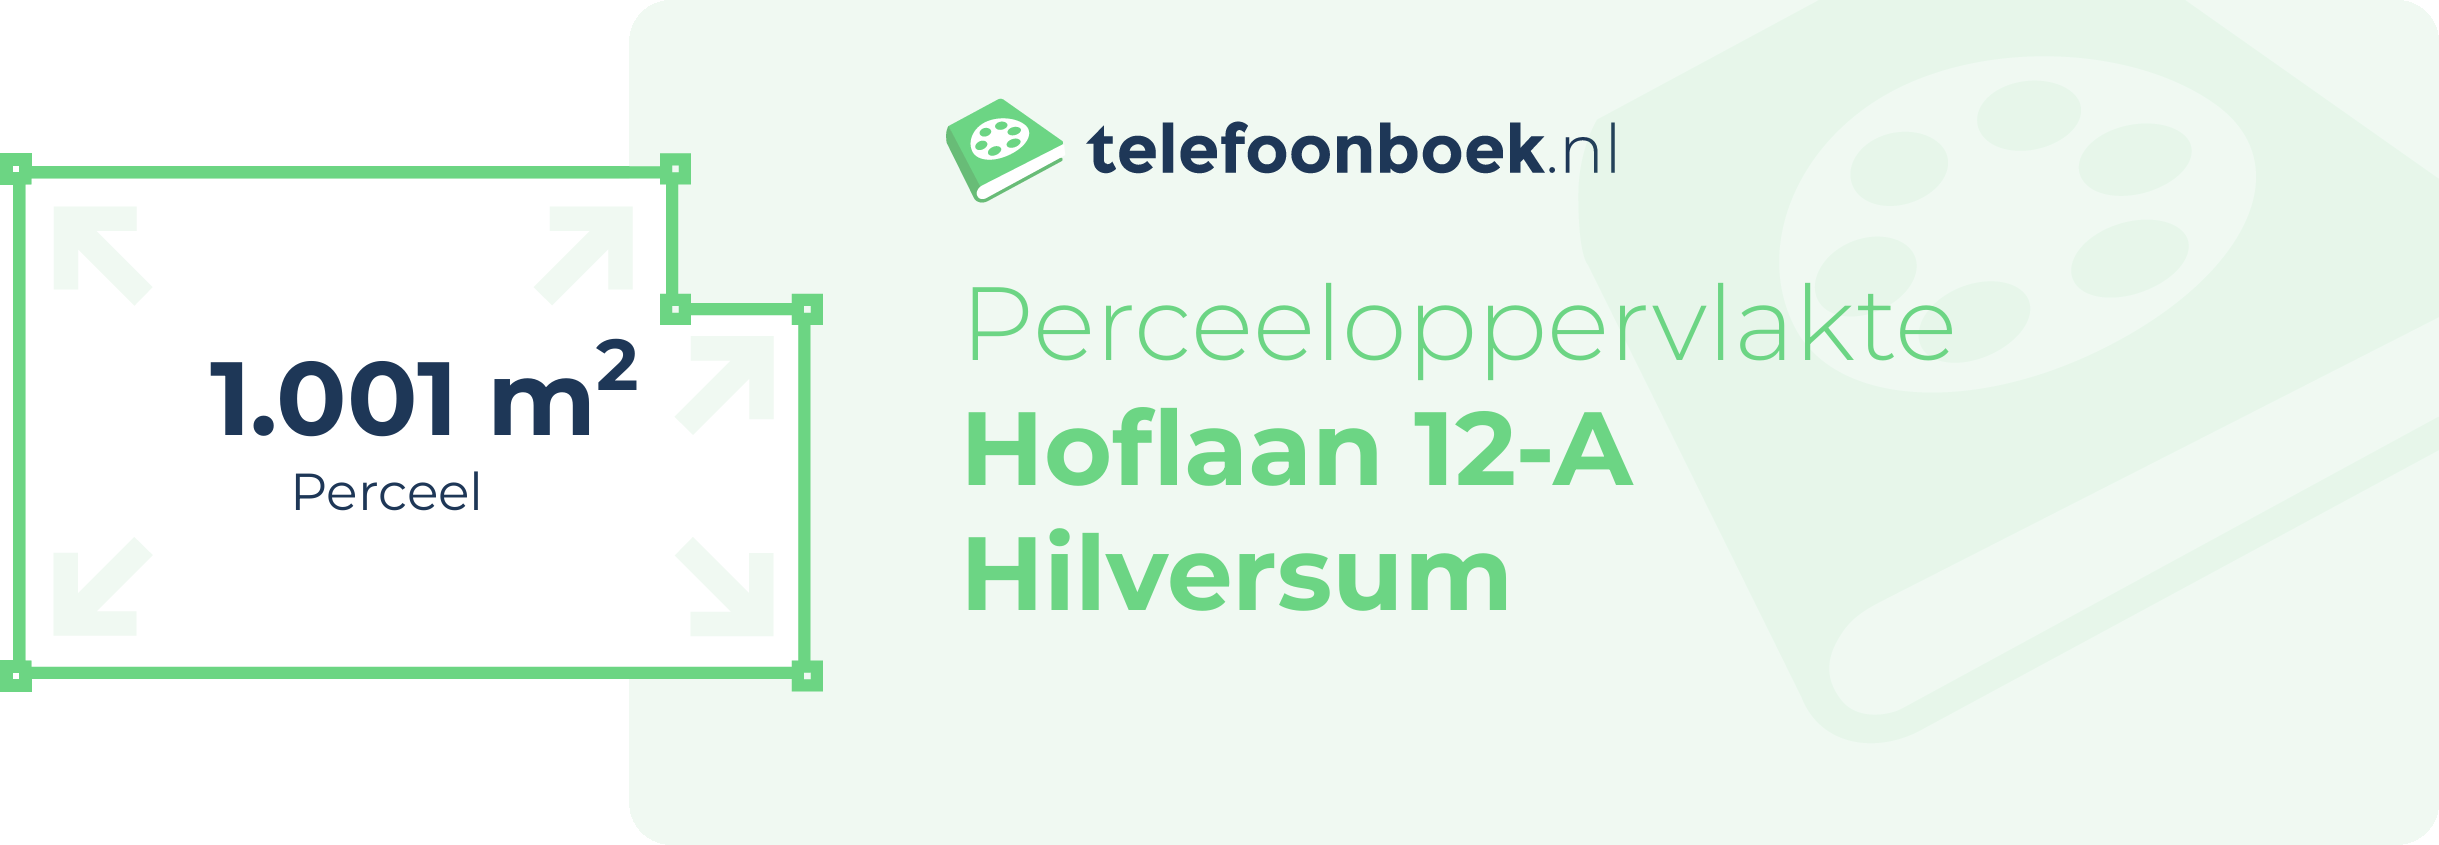 Perceeloppervlakte Hoflaan 12-A Hilversum